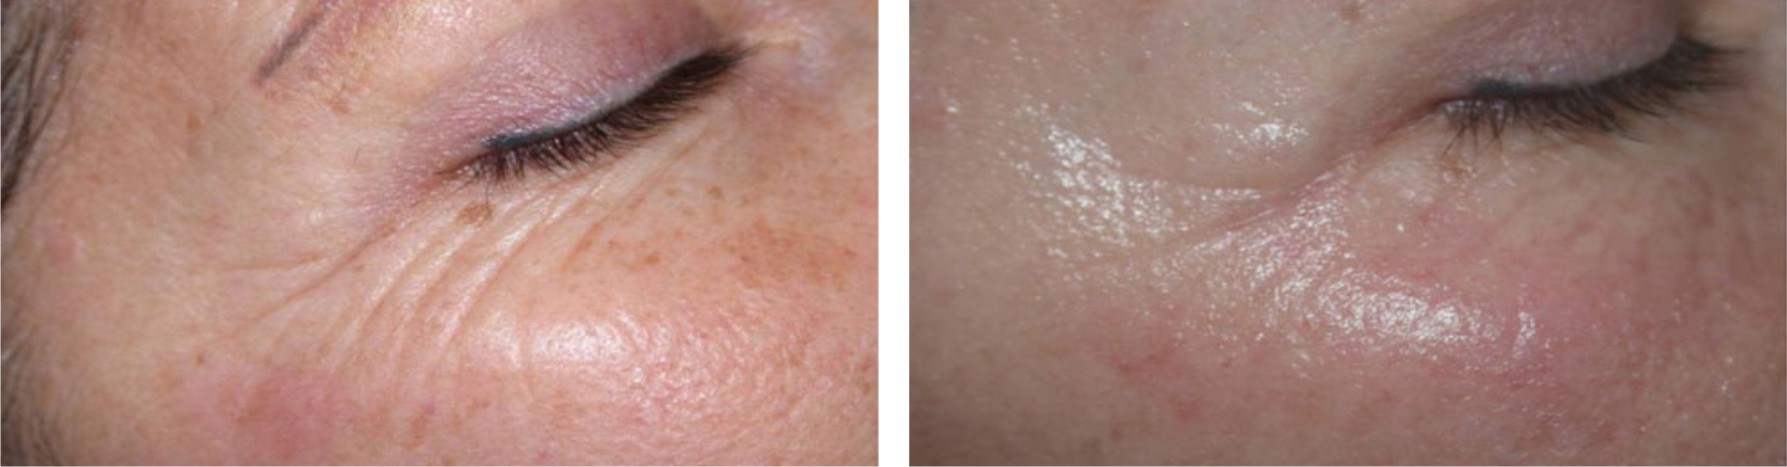 Laser Skin Rejuvenation Image Two